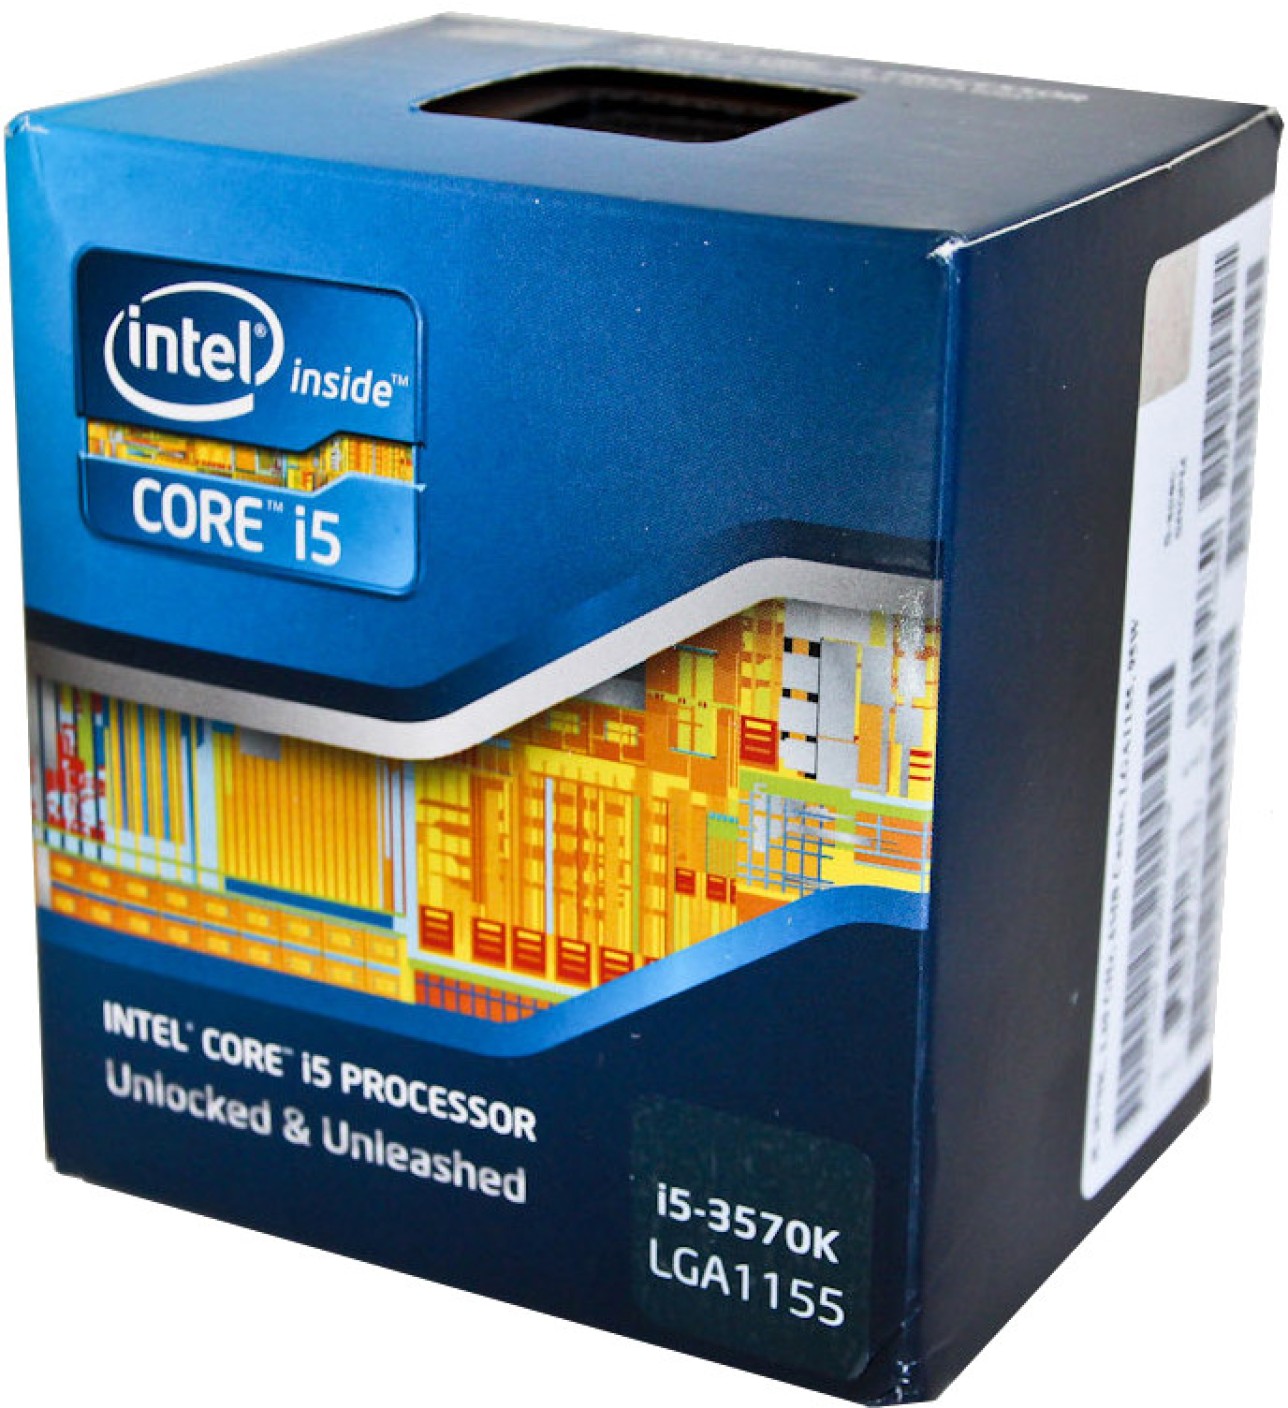 Intel 3.4 GHz LGA 1155 Core i5 3570K Processor - Intel : Flipkart.com